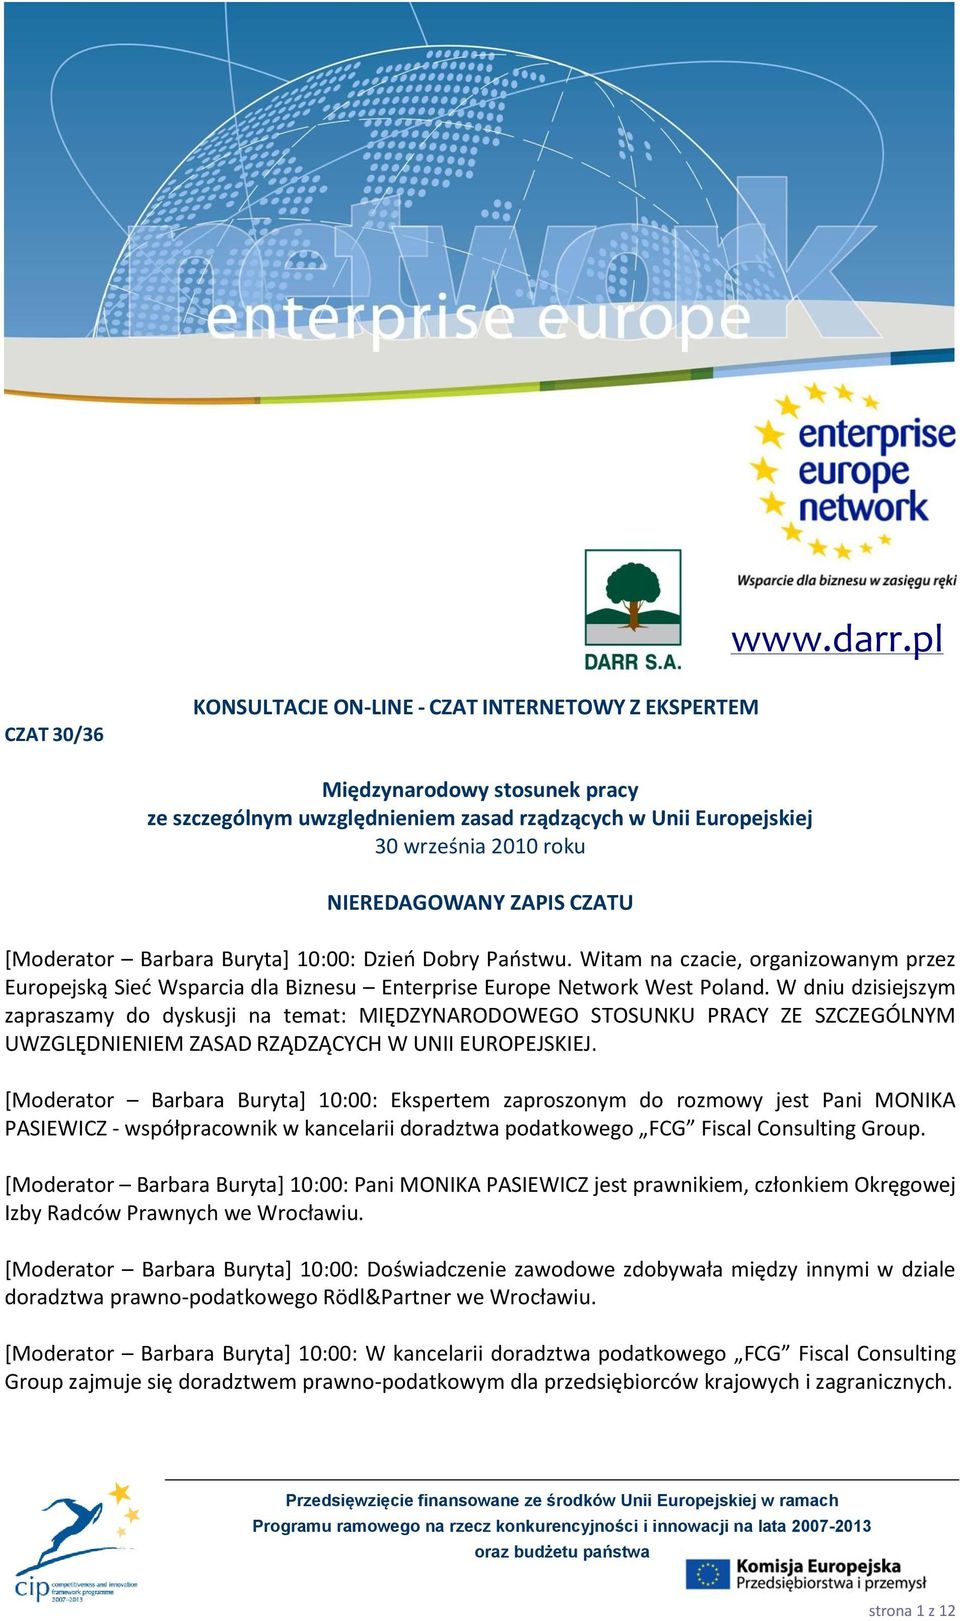 ZAPIS CZATU [Moderator Barbara Buryta+ 10:00: Dzieo Dobry Paostwu. Witam na czacie, organizowanym przez Europejską Sied Wsparcia dla Biznesu Enterprise Europe Network West Poland.